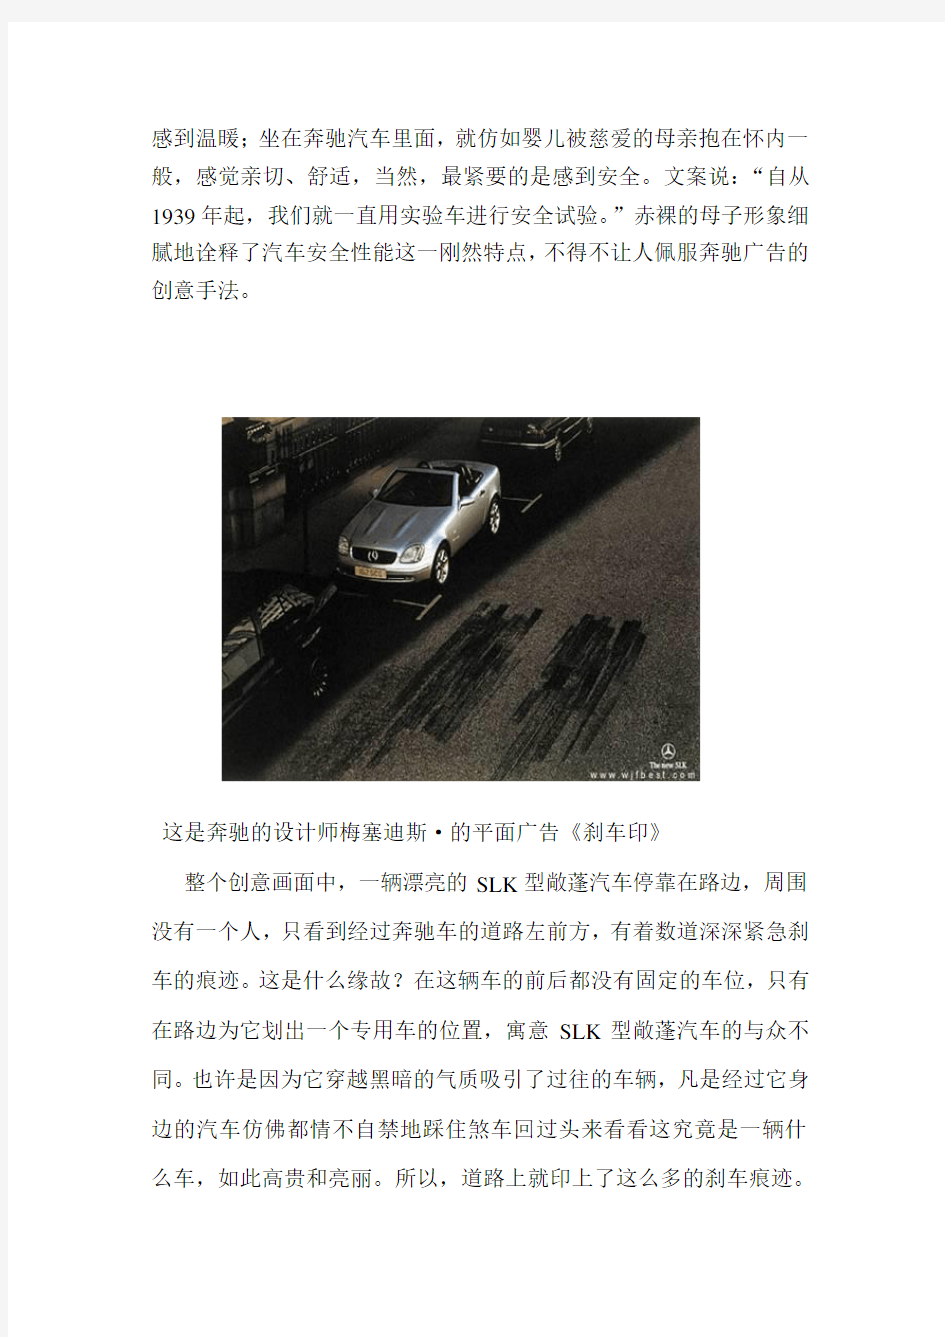 奔驰汽车的平面广告赏析__(1)